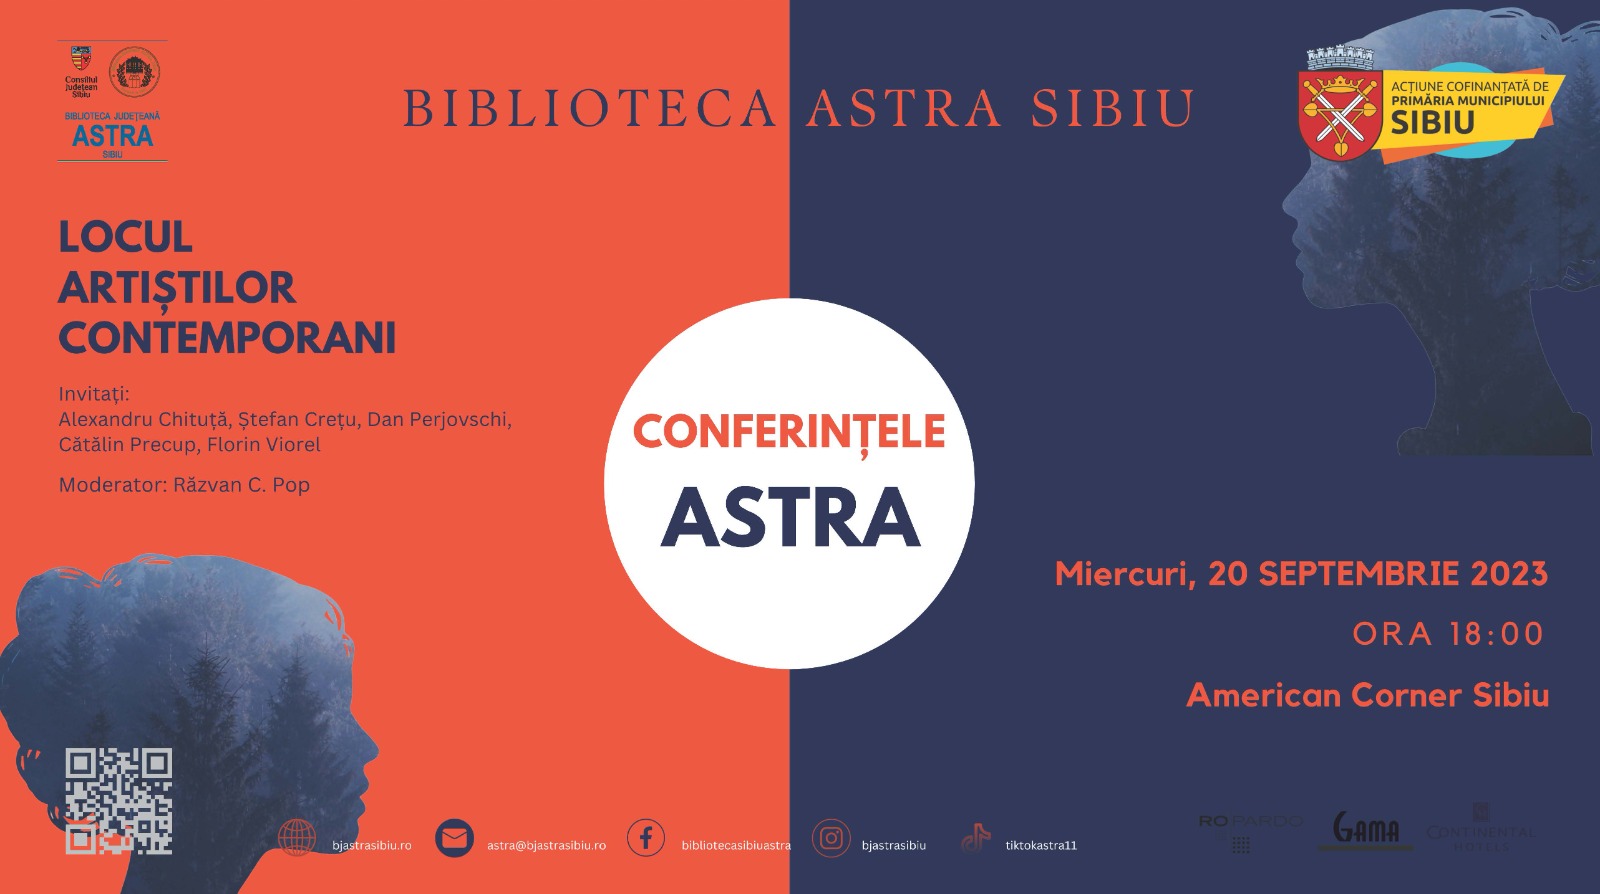 Conferințele ASTRA: A doua întâlnire aduce față în față artiști contemporani sibieni